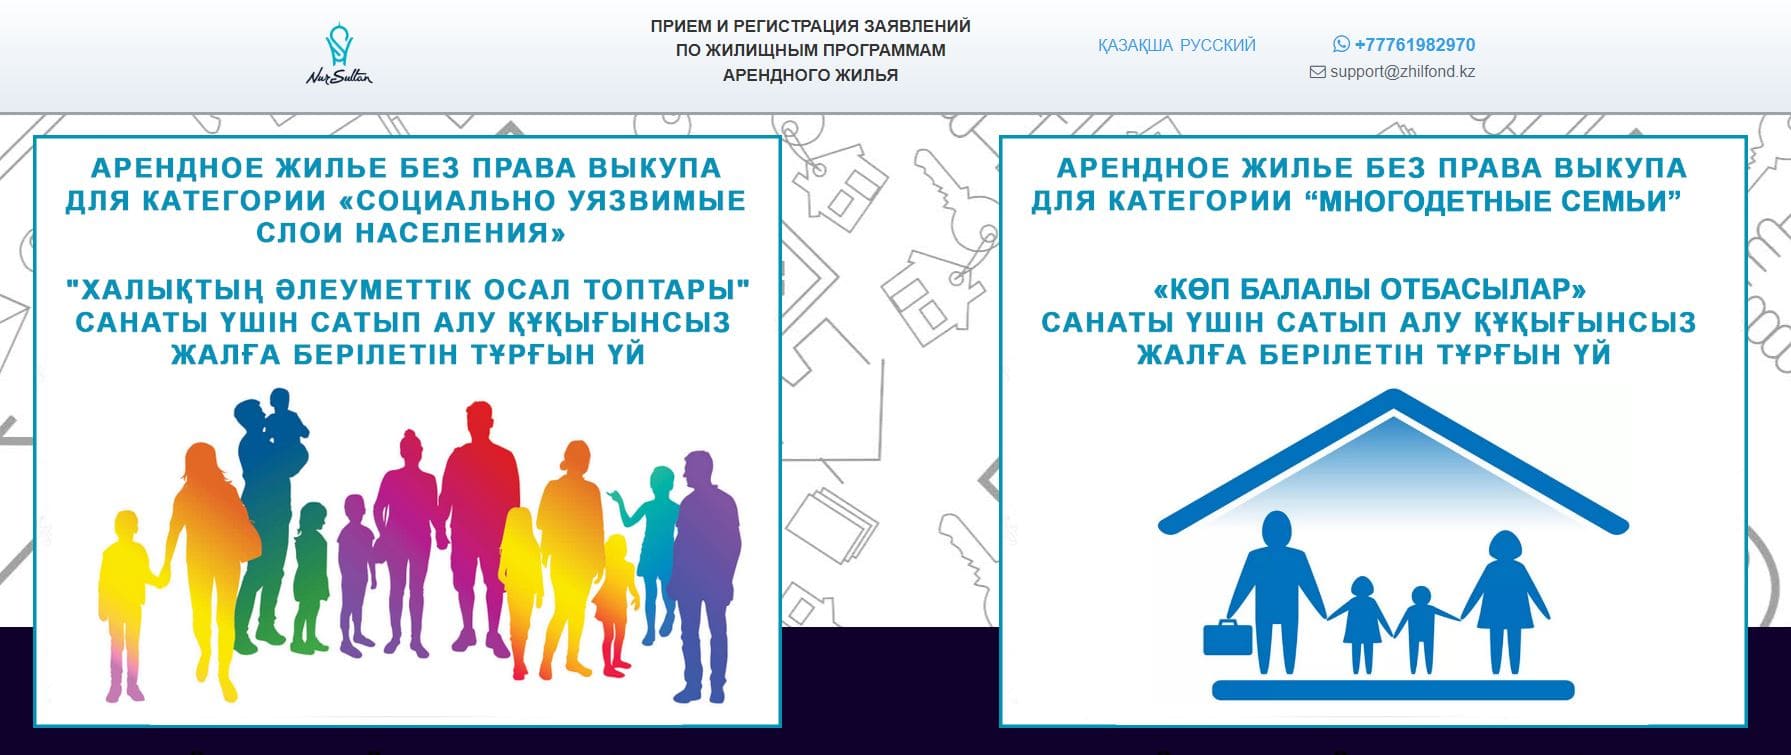 Прием заявлений по жилищной программе (qatysu.zhilfond.kz) – официальный сайт